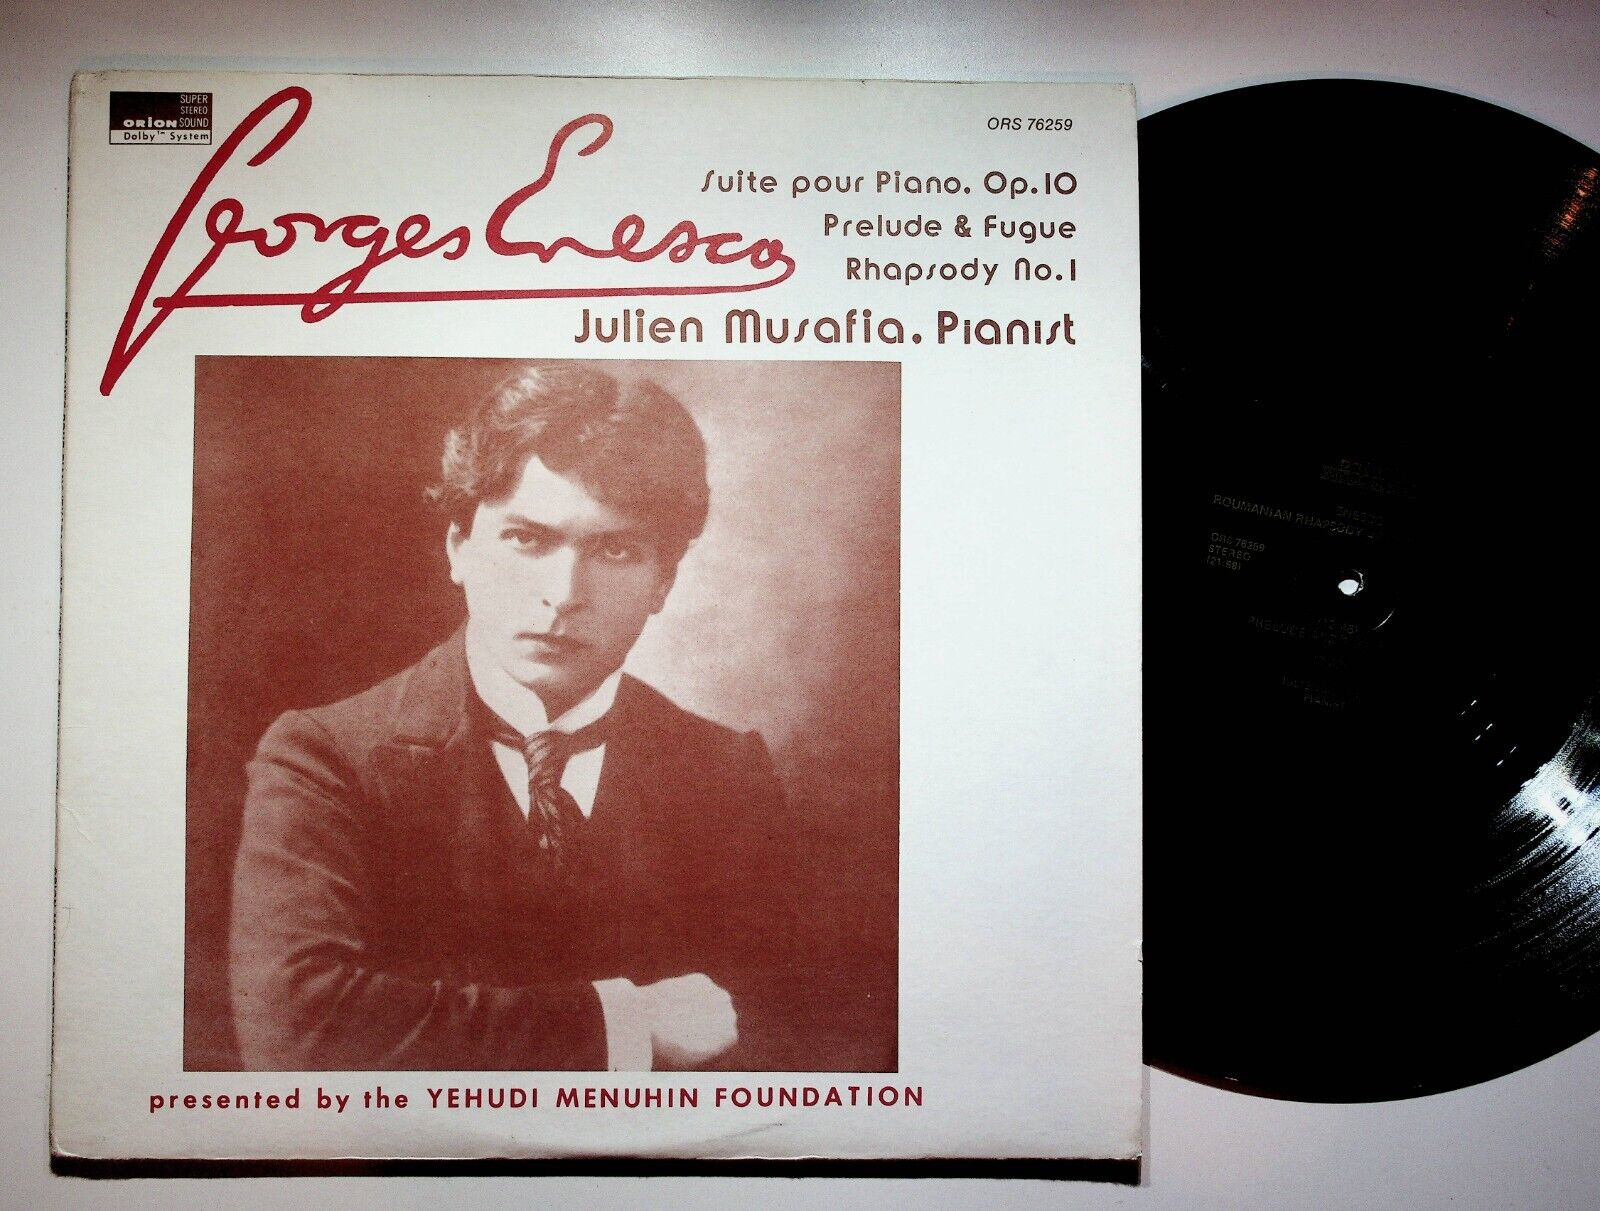 1976 George Enesco Julien Musafia Piano Suite Rhapsody No 1 Vinyl LP Record VG+